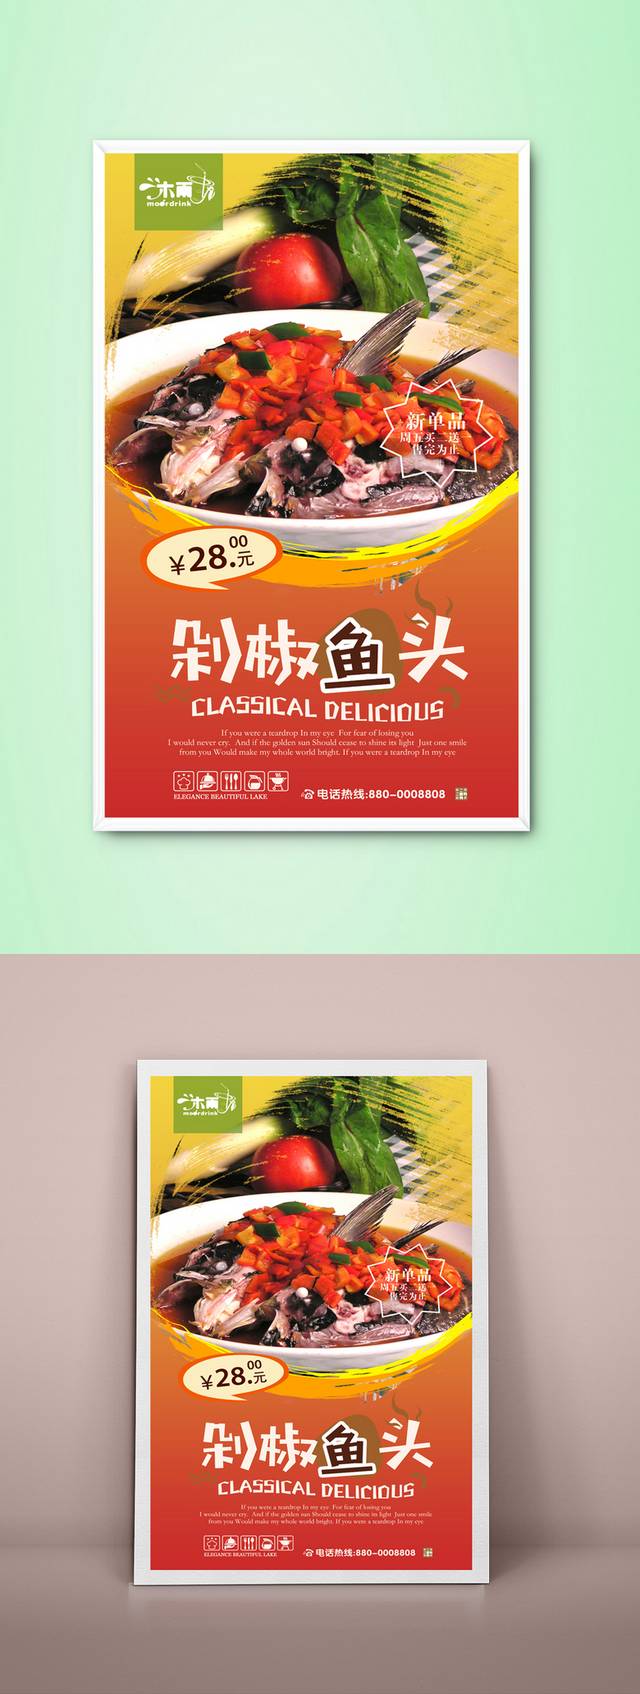 高档经典剁椒鱼头促销宣传海报设计